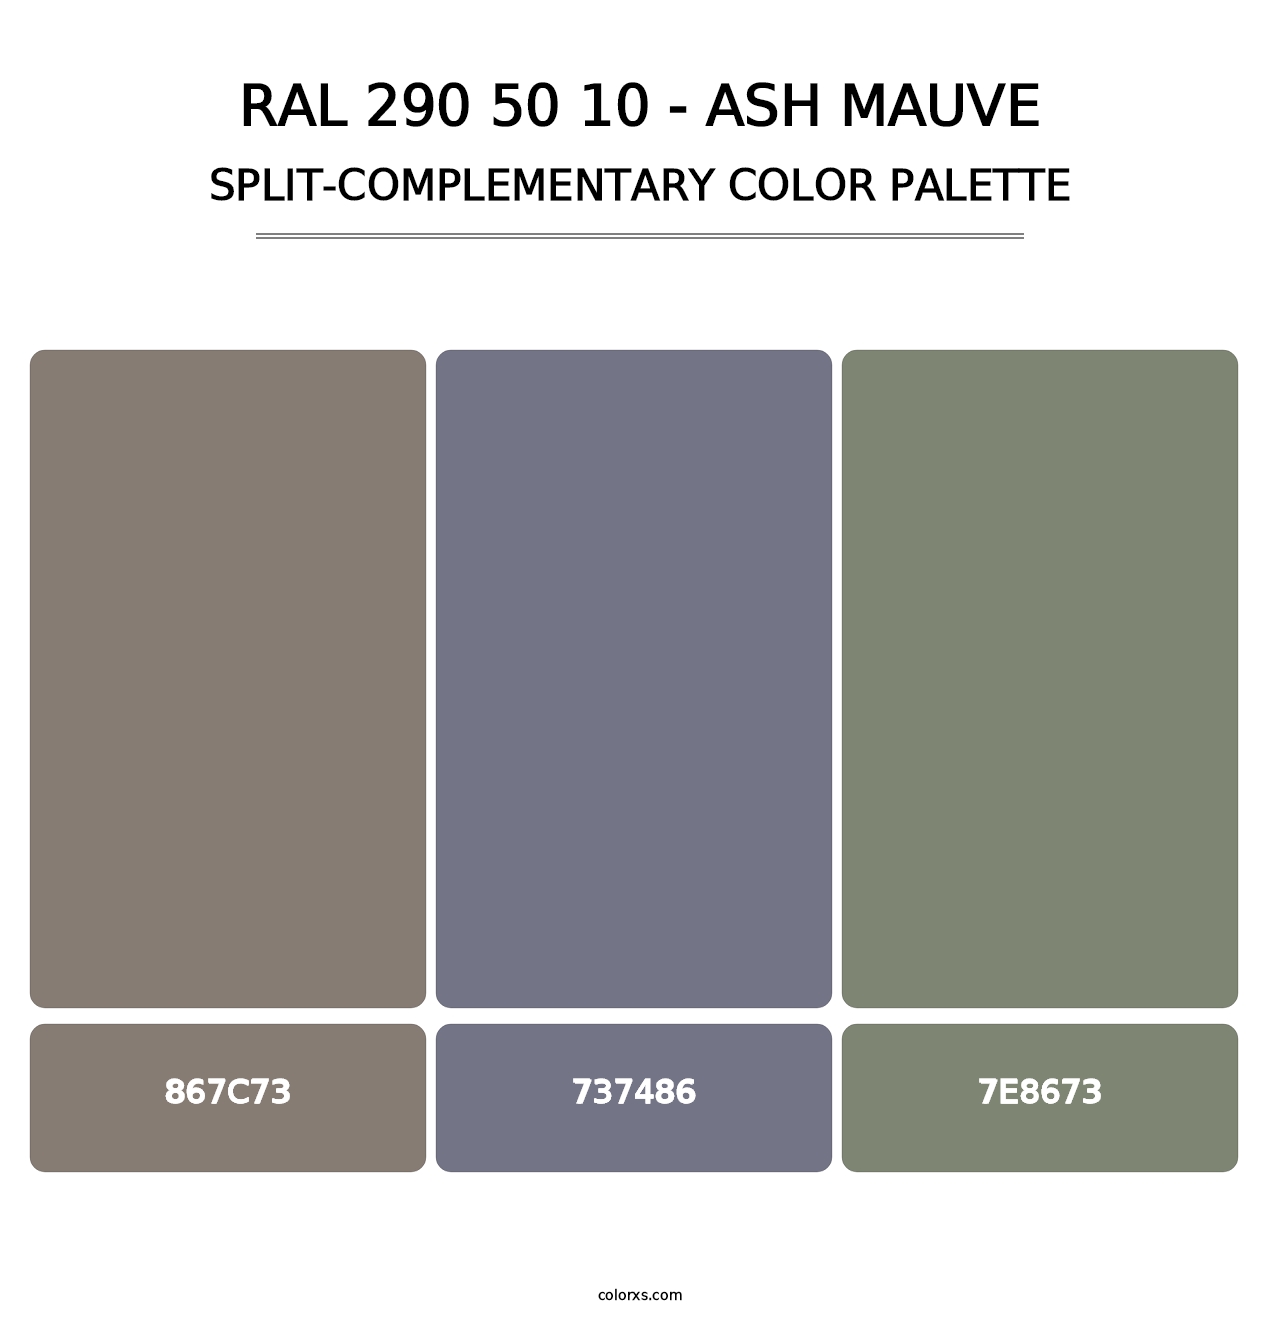 RAL 290 50 10 - Ash Mauve - Split-Complementary Color Palette